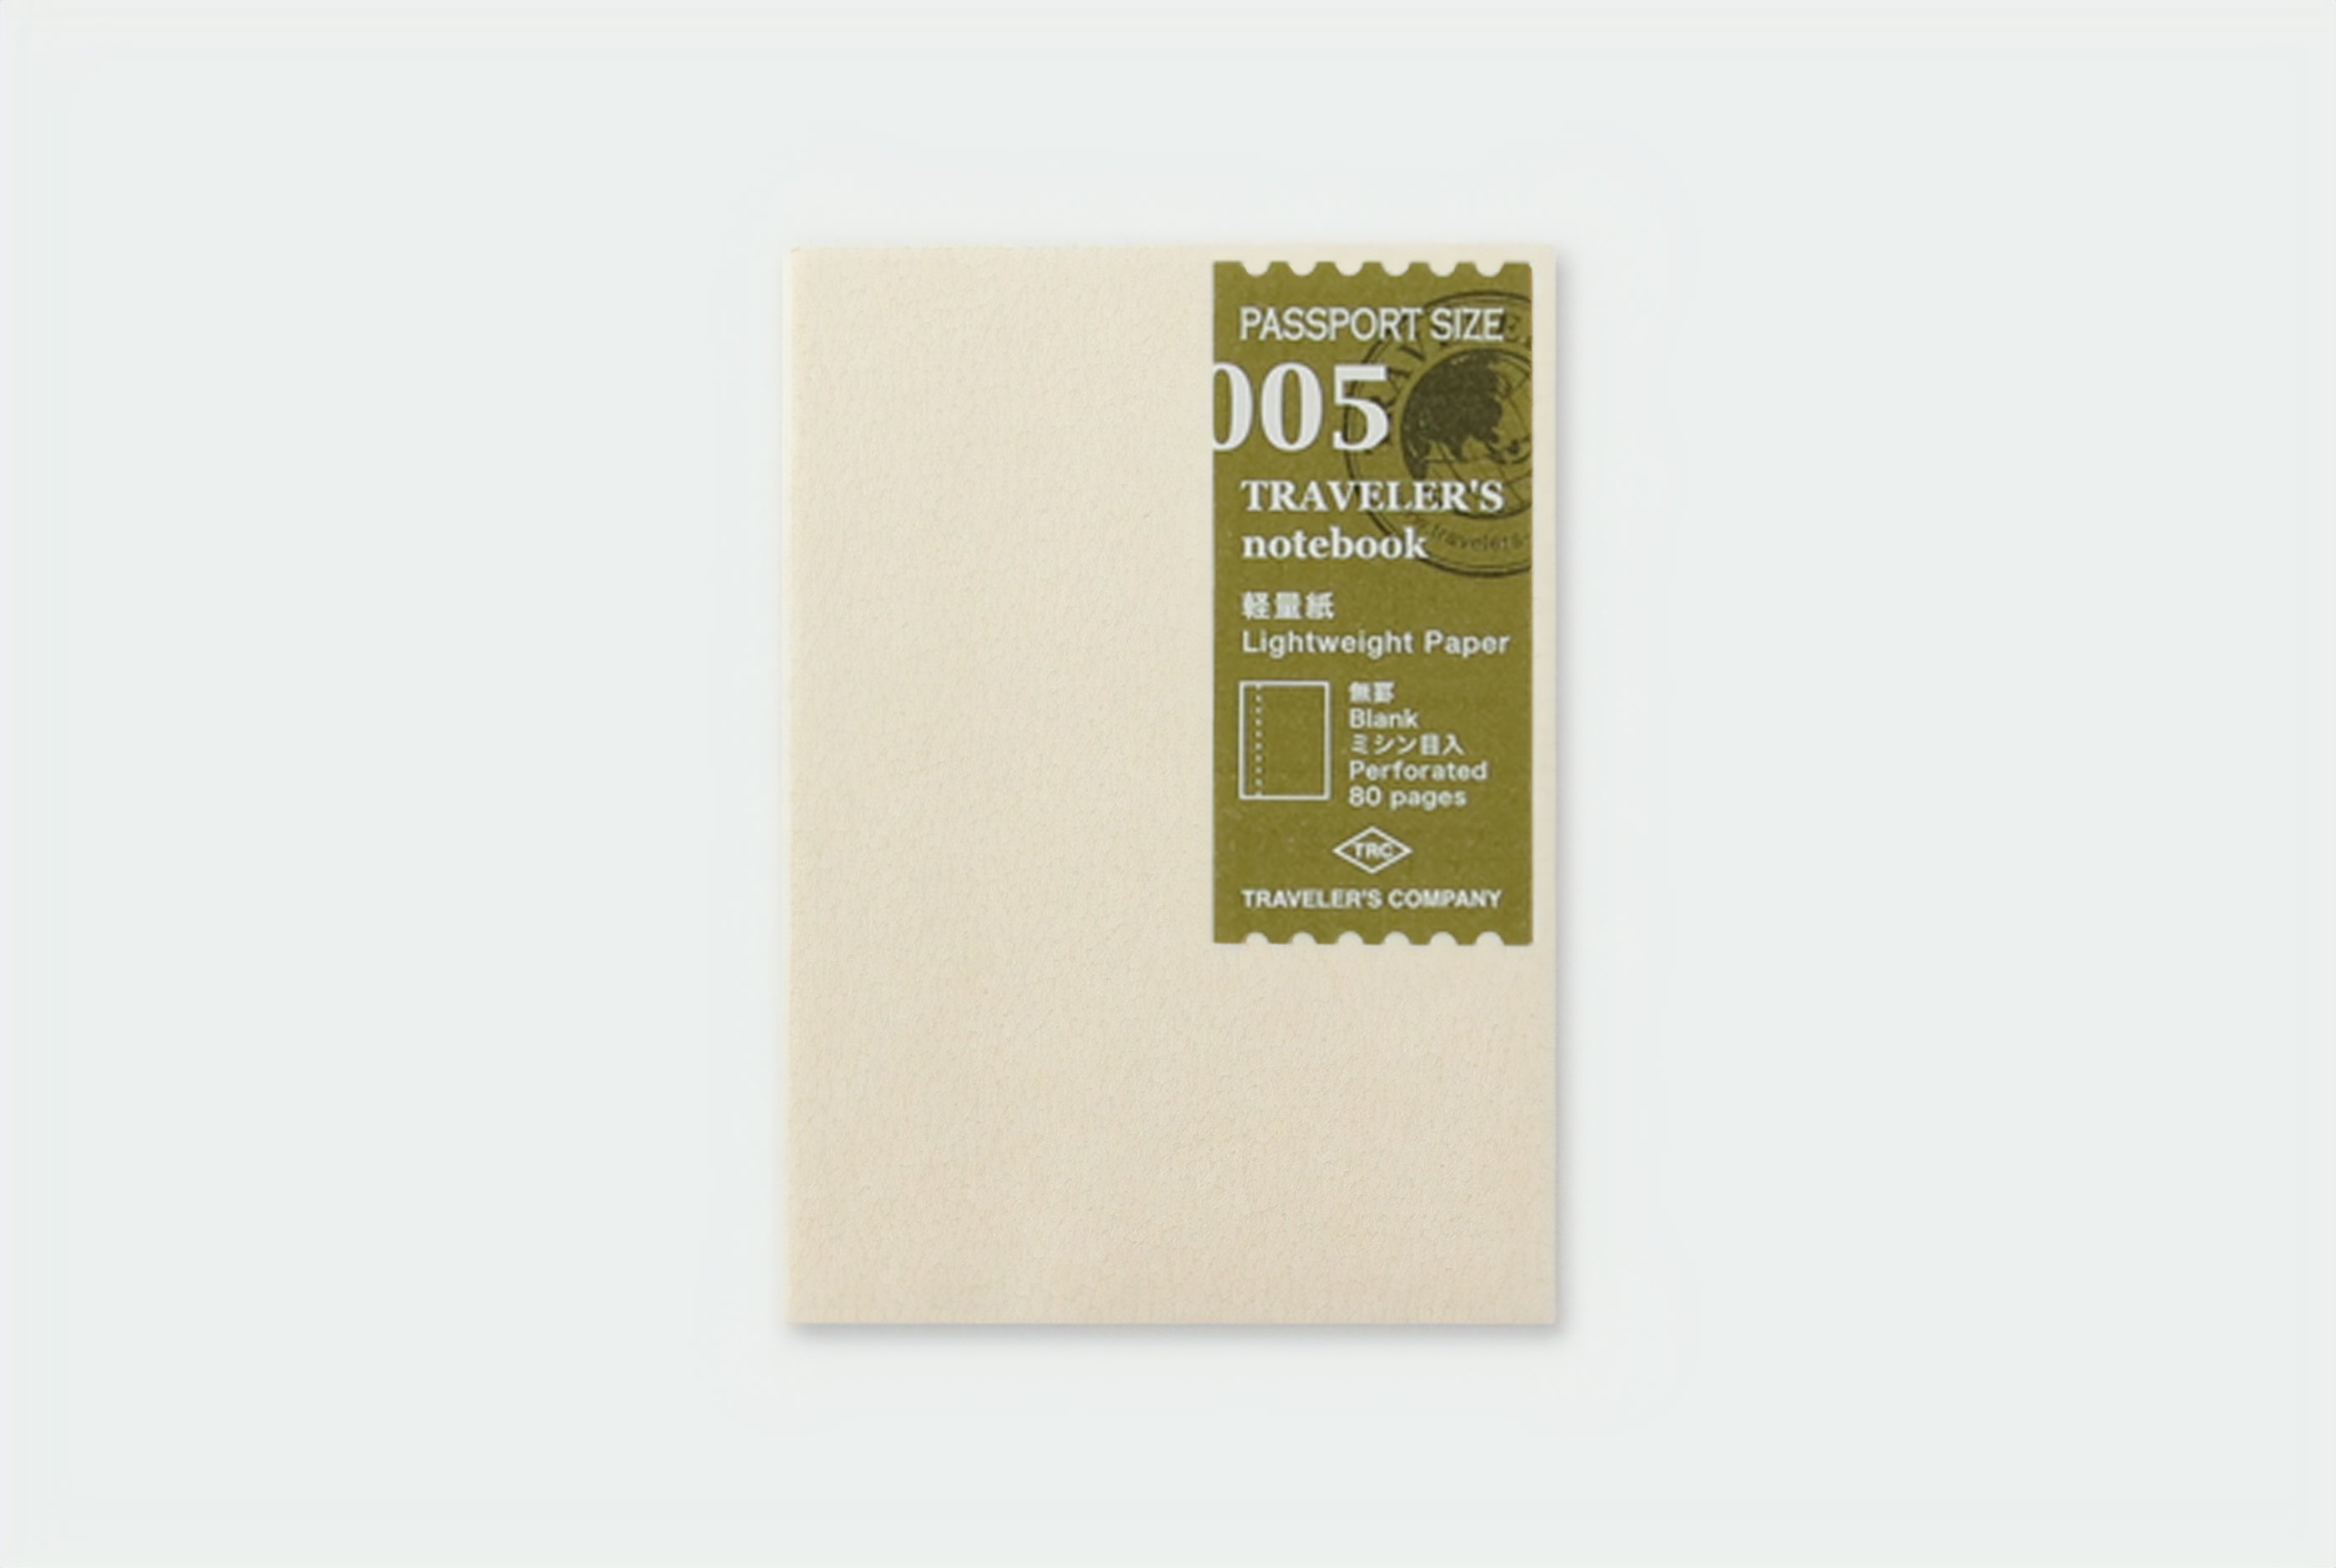 TRAVELER'S notebook Passport Size - 005. Lightweight Paper Refill